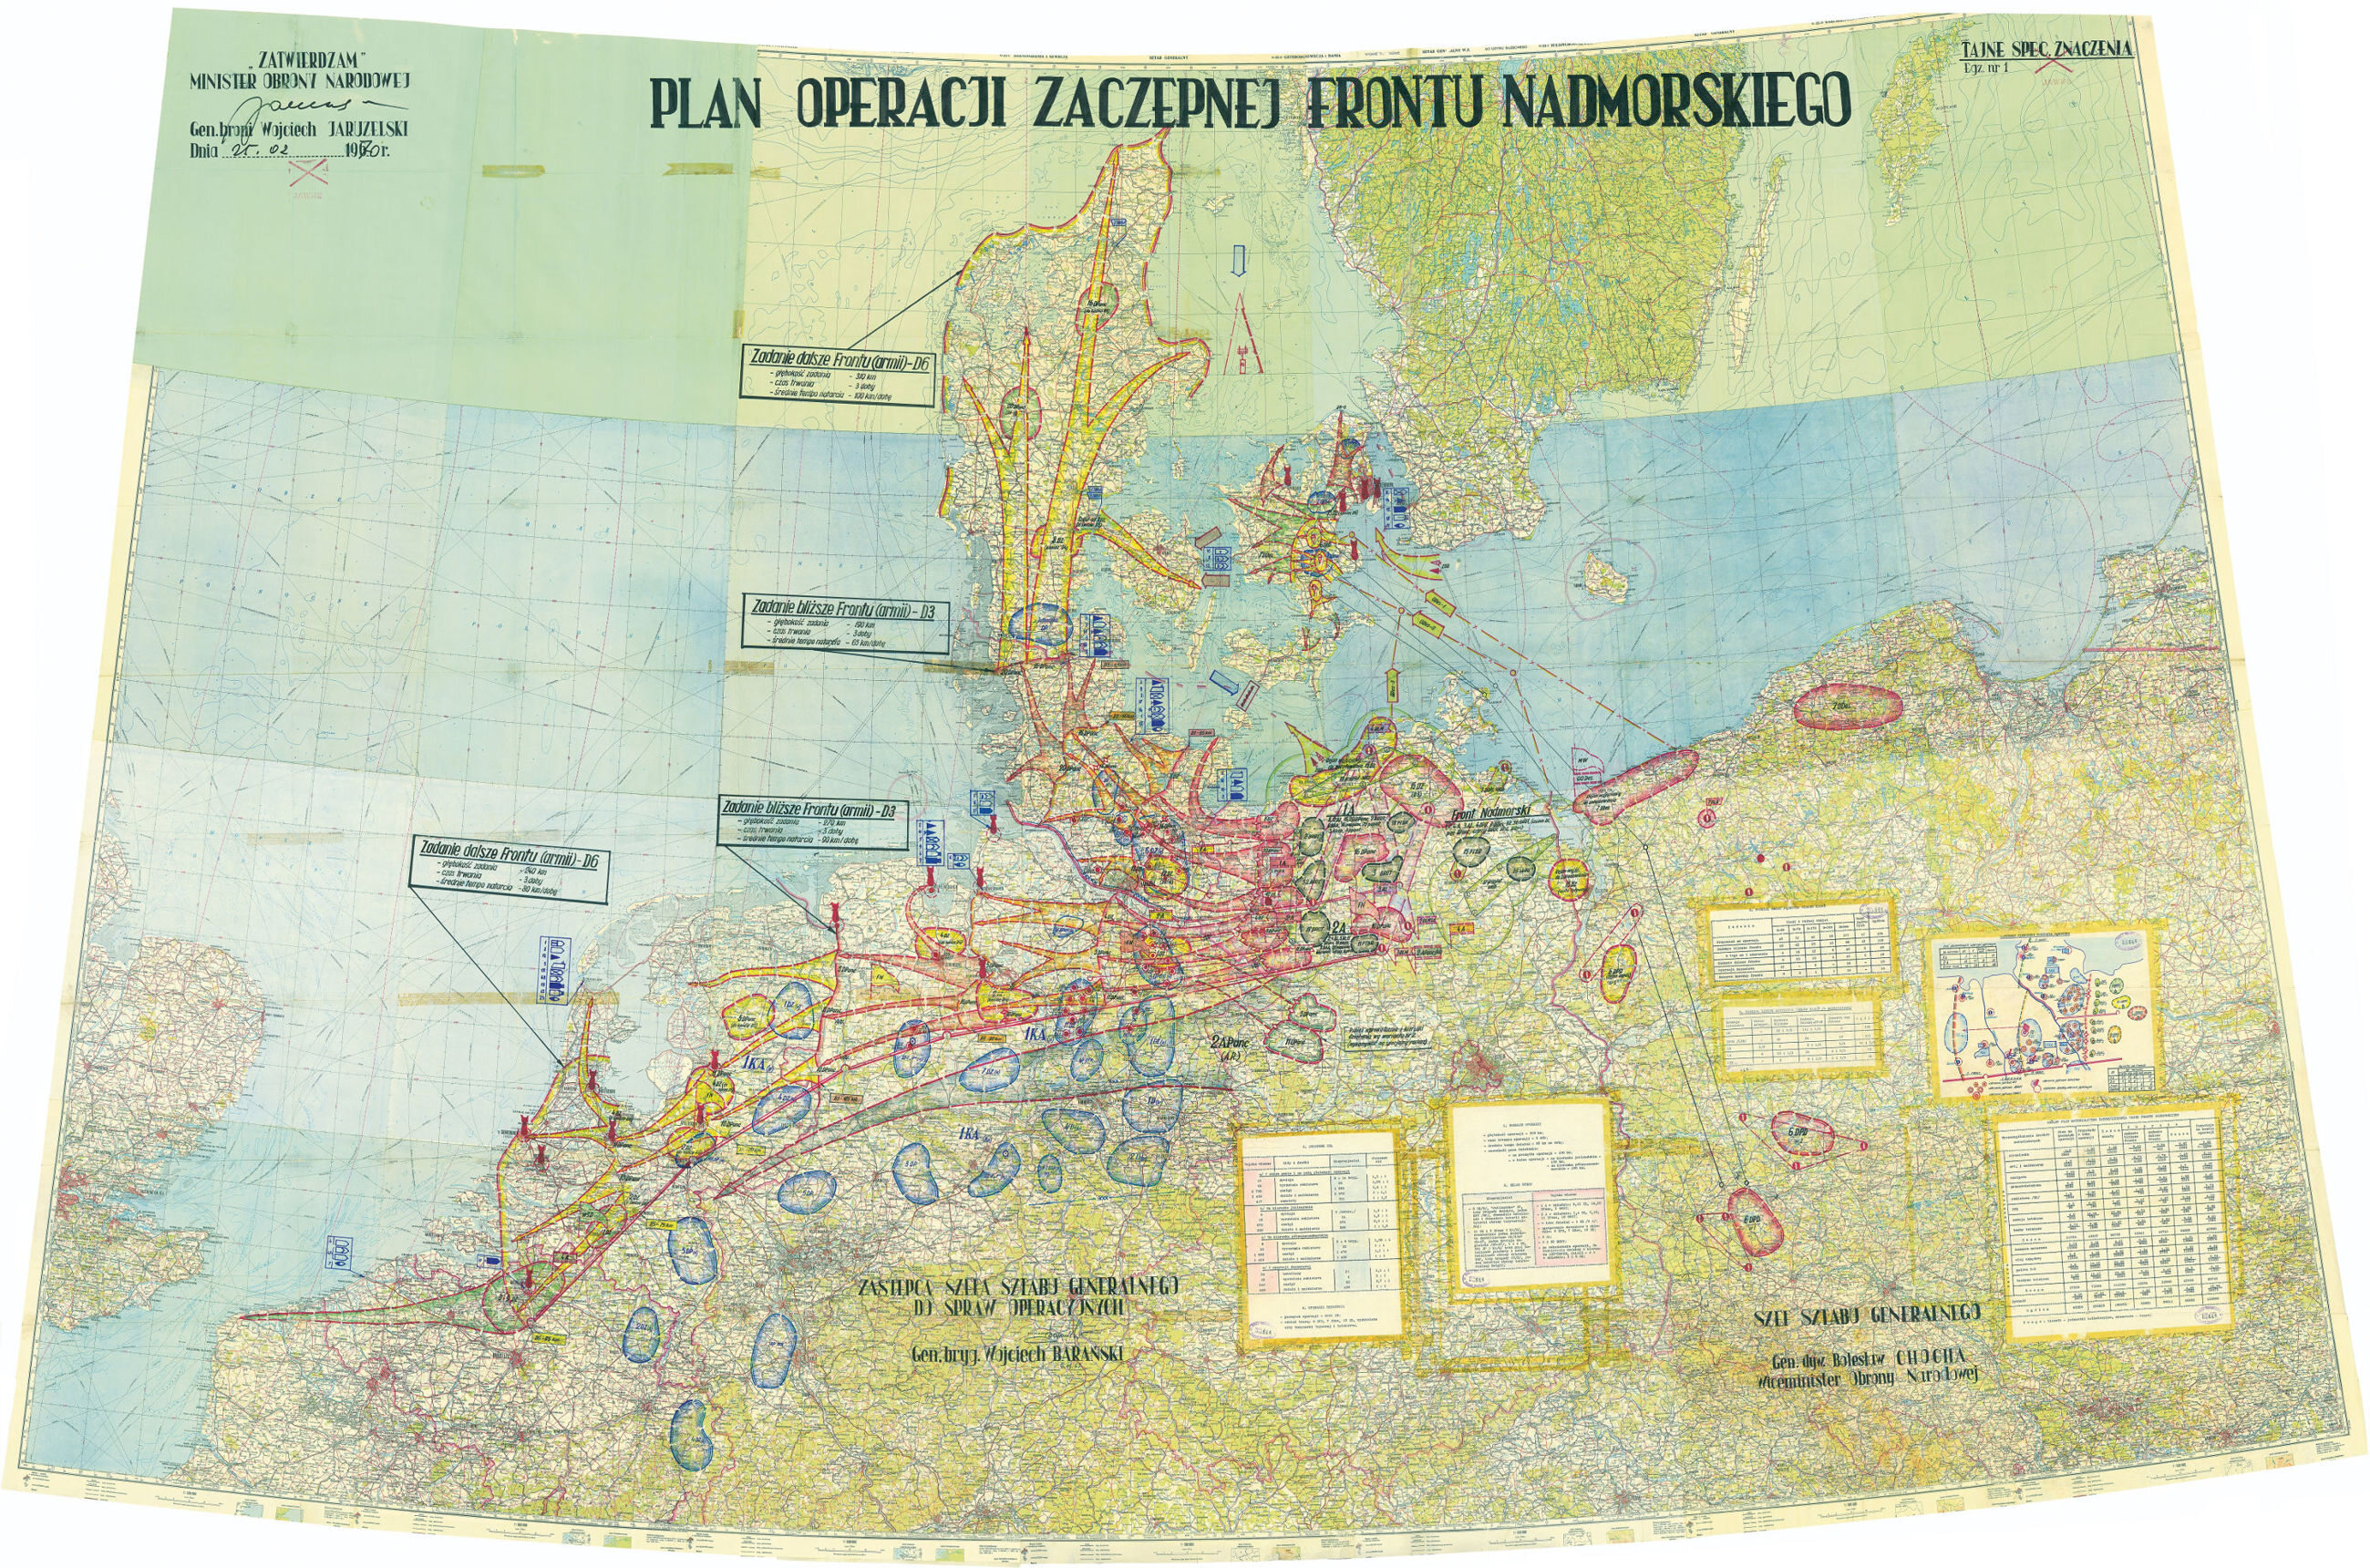 Tajna mapa z planem ataku na Zachód. Zaznaczono na niej miejsca uderzeń atomowych